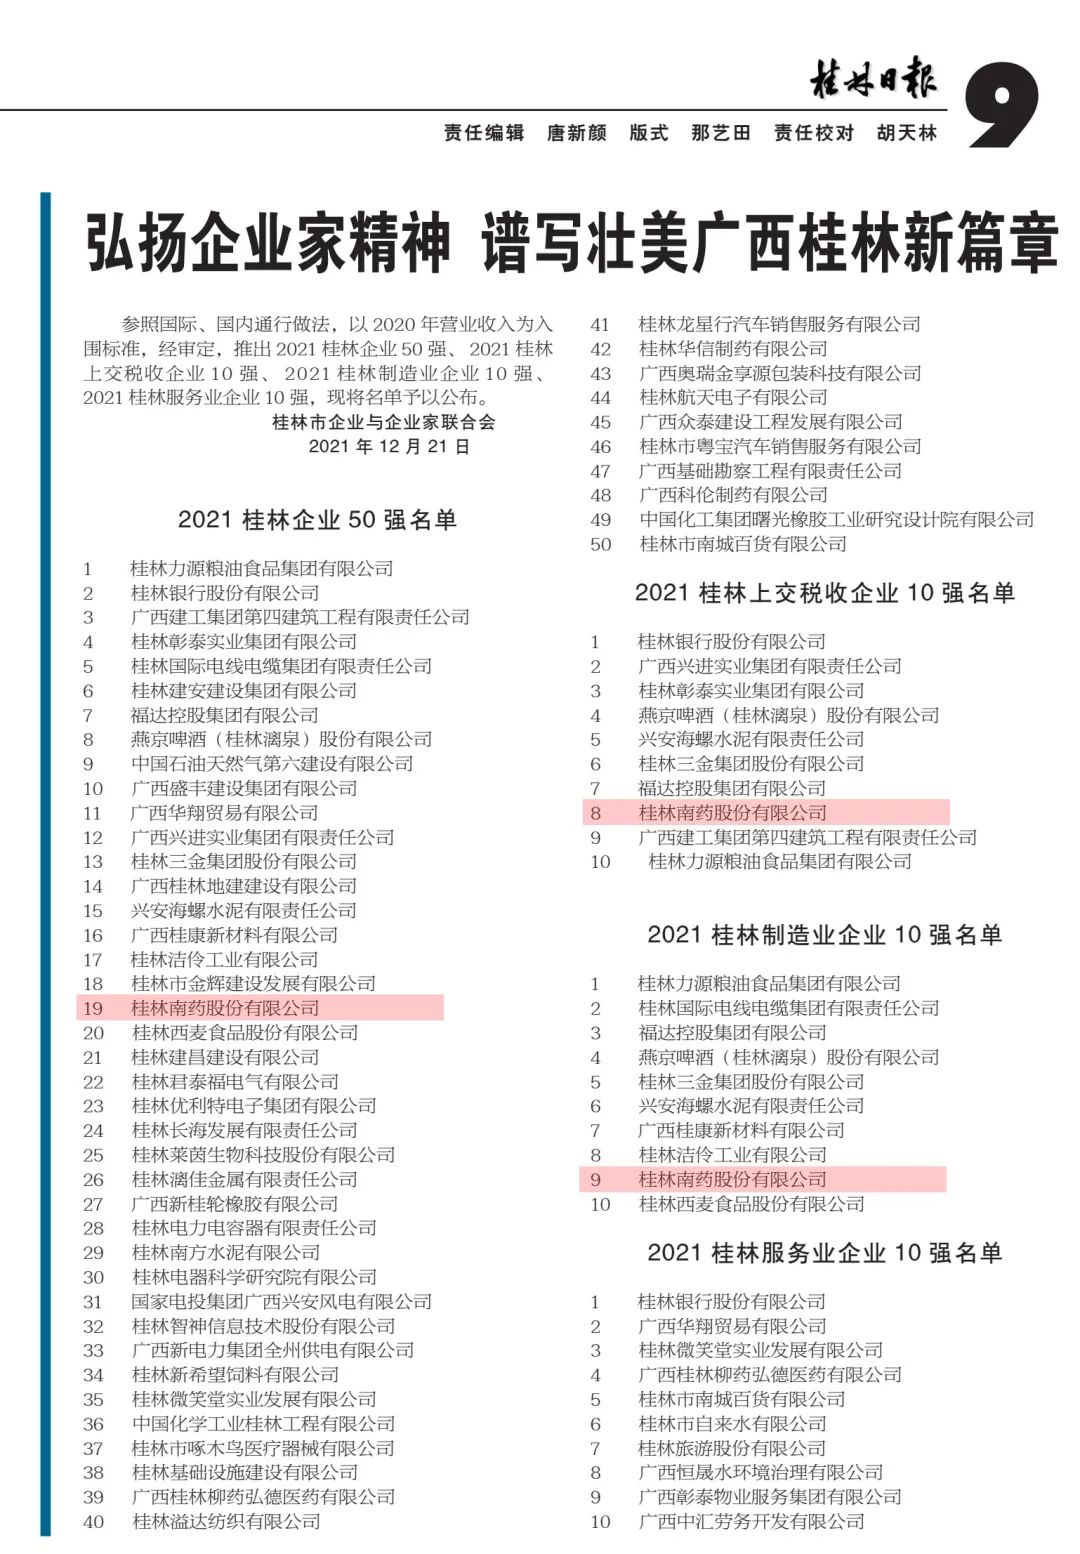 公布了！桂林南药荣获多项荣誉，纳税情况位列桂林市榜单10强